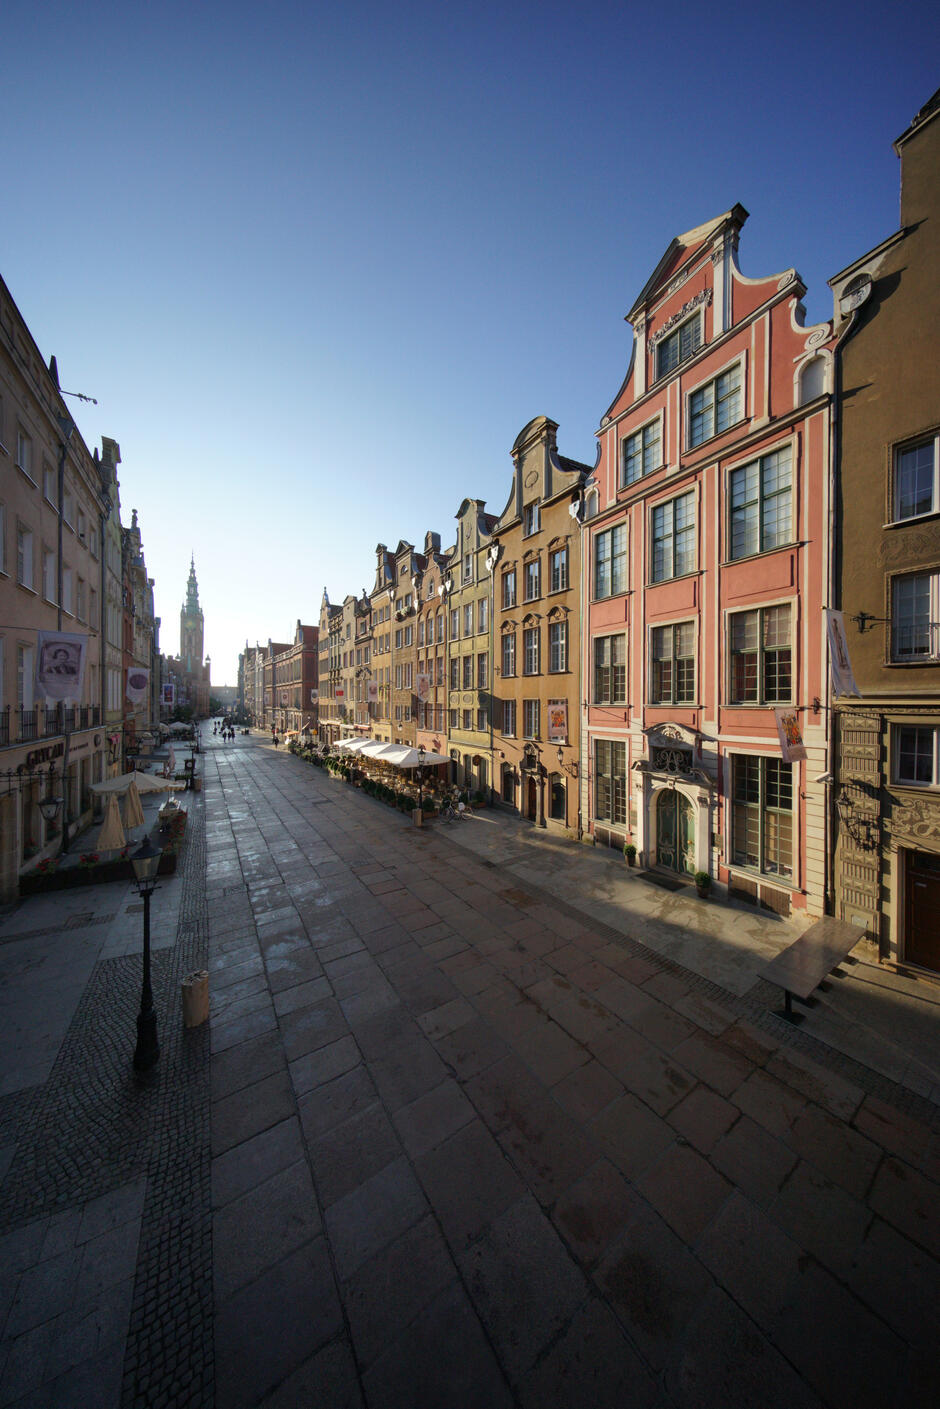 Zdjęcie przedstawia ulicę Długą w Gdańsku, widzianą od strony wejścia do Domu Uphagena, sfotografowaną przez Dariusza Kulę. Po obu stronach ulicy znajdują się kolorowe kamienice, a w tle widać wieżę Ratusza Głównego Miasta